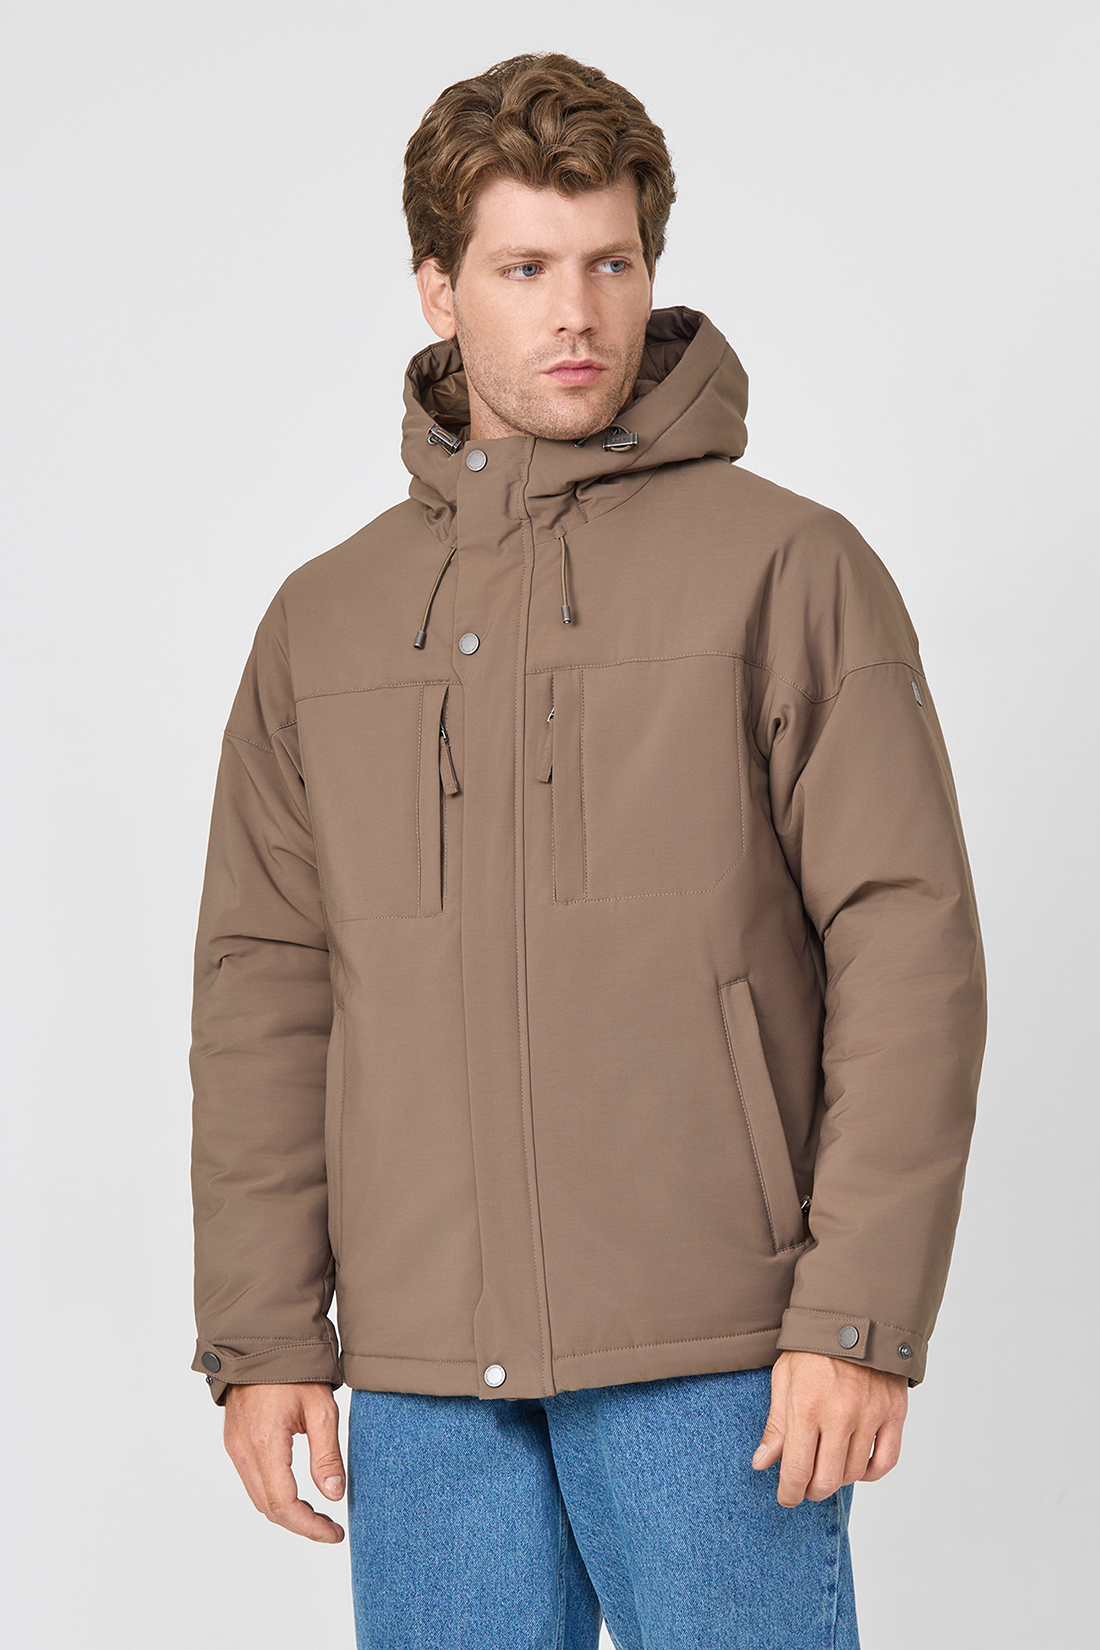 Зимняя куртка мужская Baon B5323503 коричневая XXL